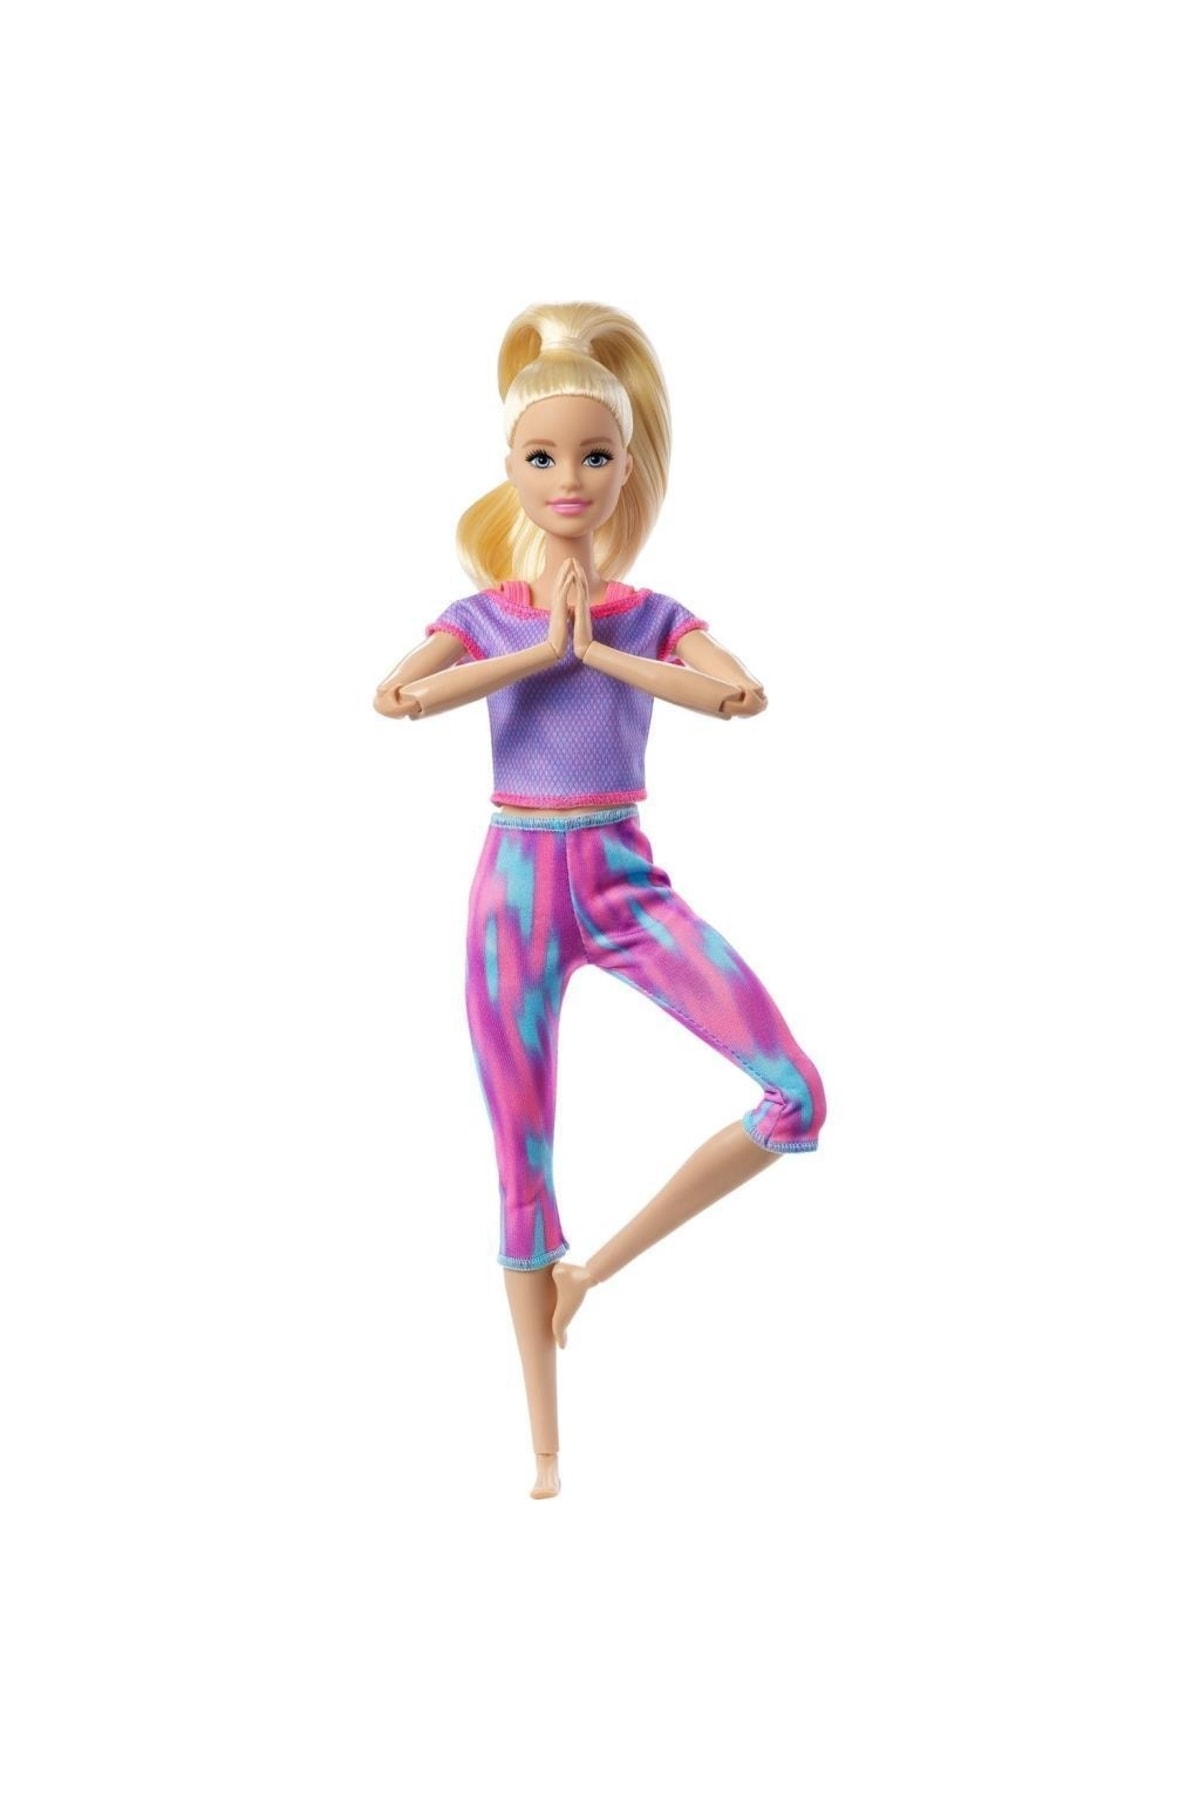 Lisinya Barbie Sonsuz Hareket Bebeği Mor Renkli Spor Kıyafeti Ile Sarışın Uzun Saçlı Bebek - Gxf04